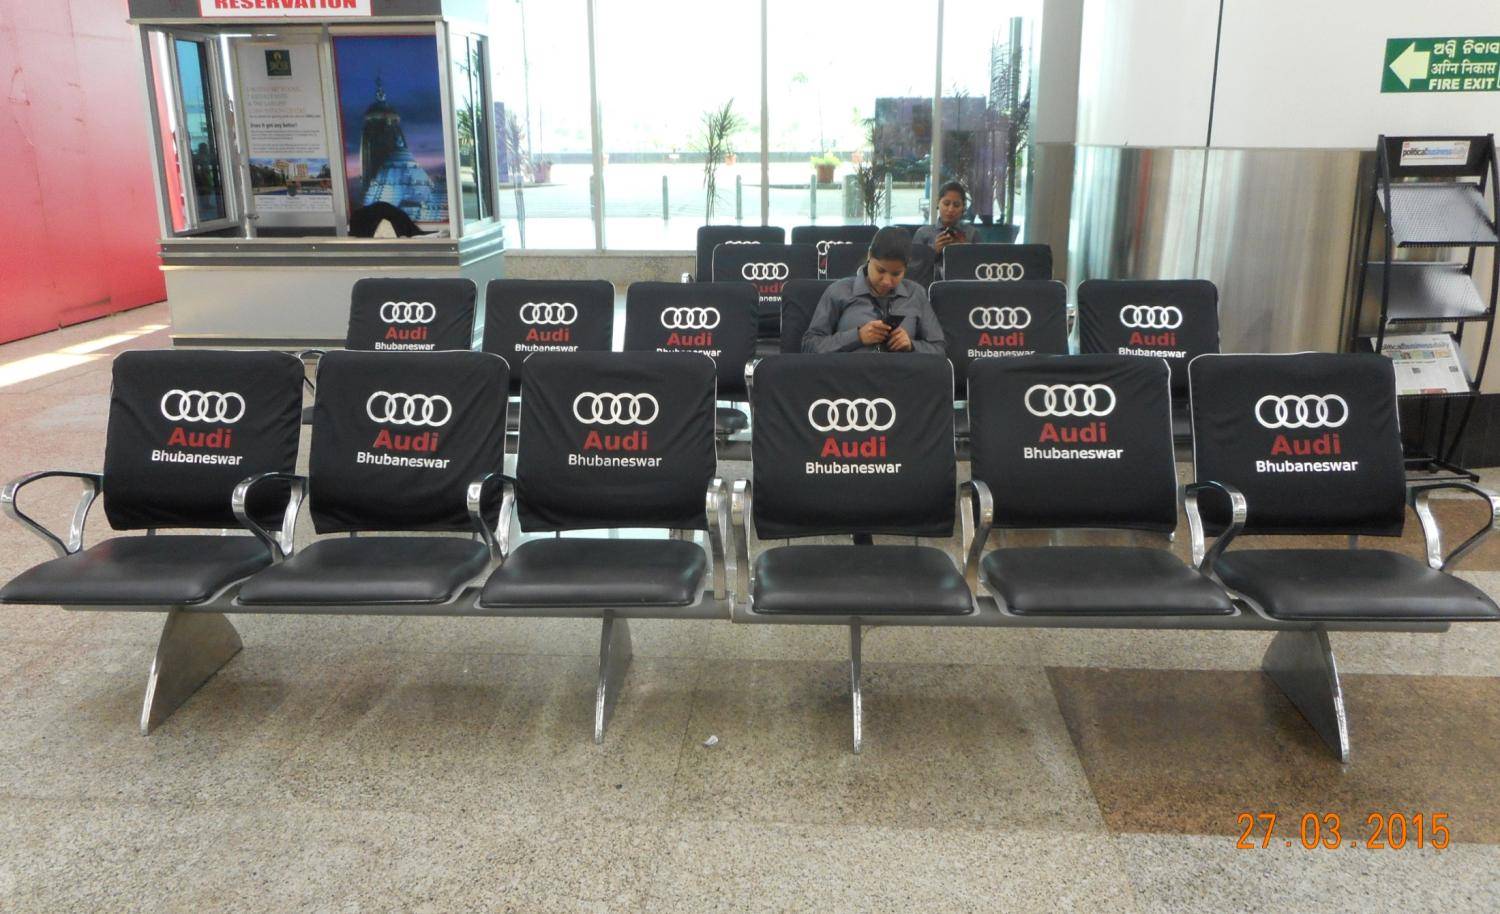 Chair branding Airport, Bhubaneswar